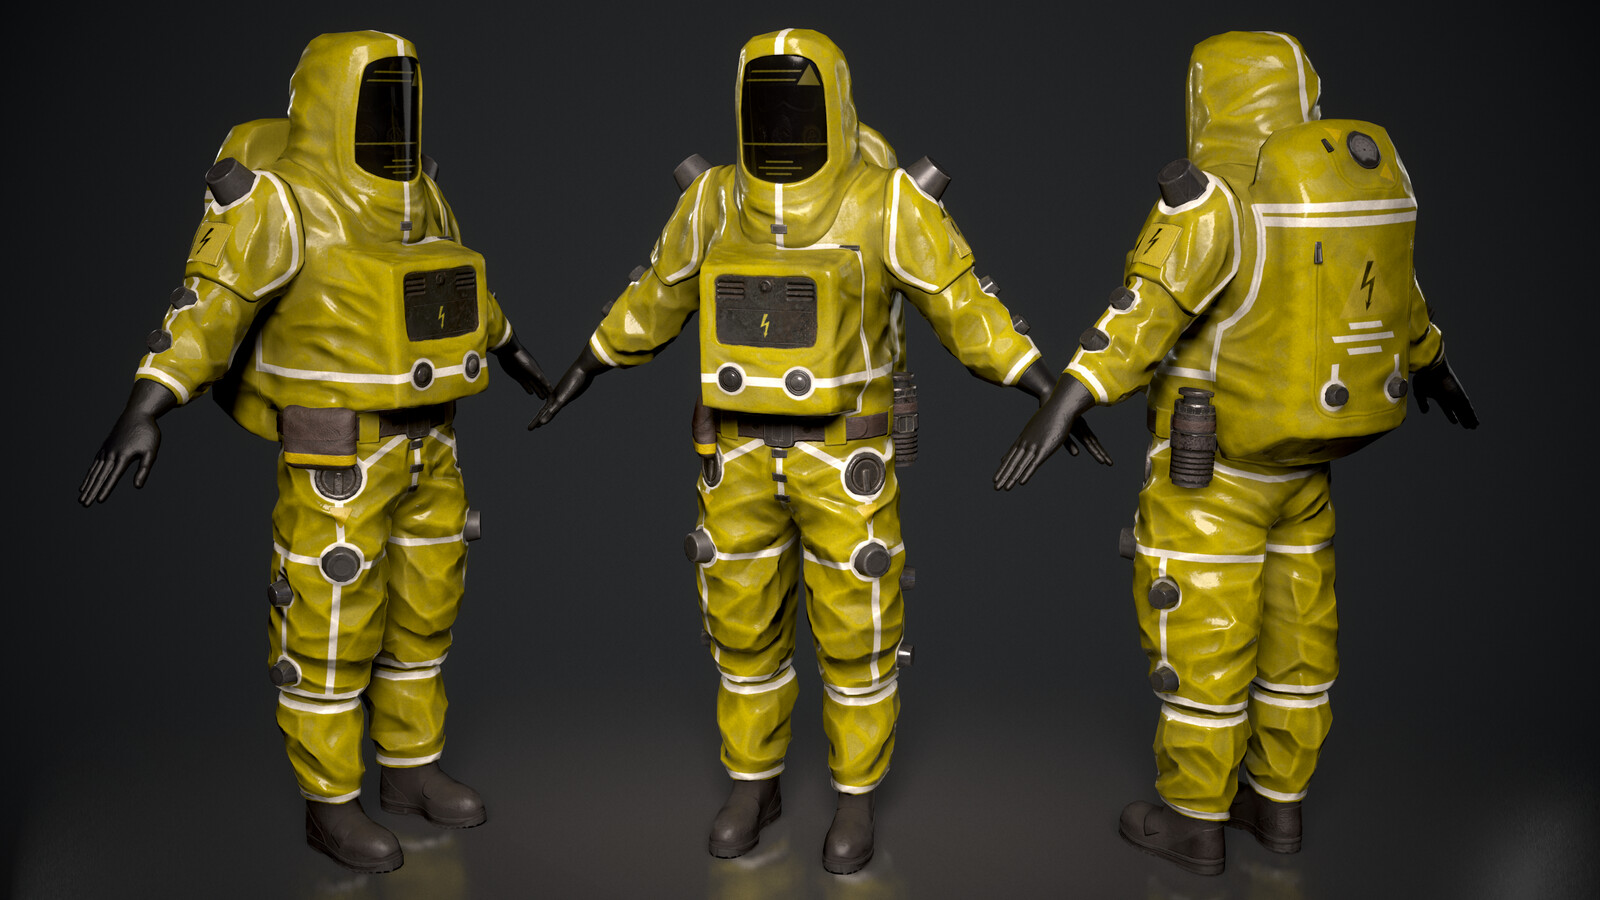 Biohazard suits.